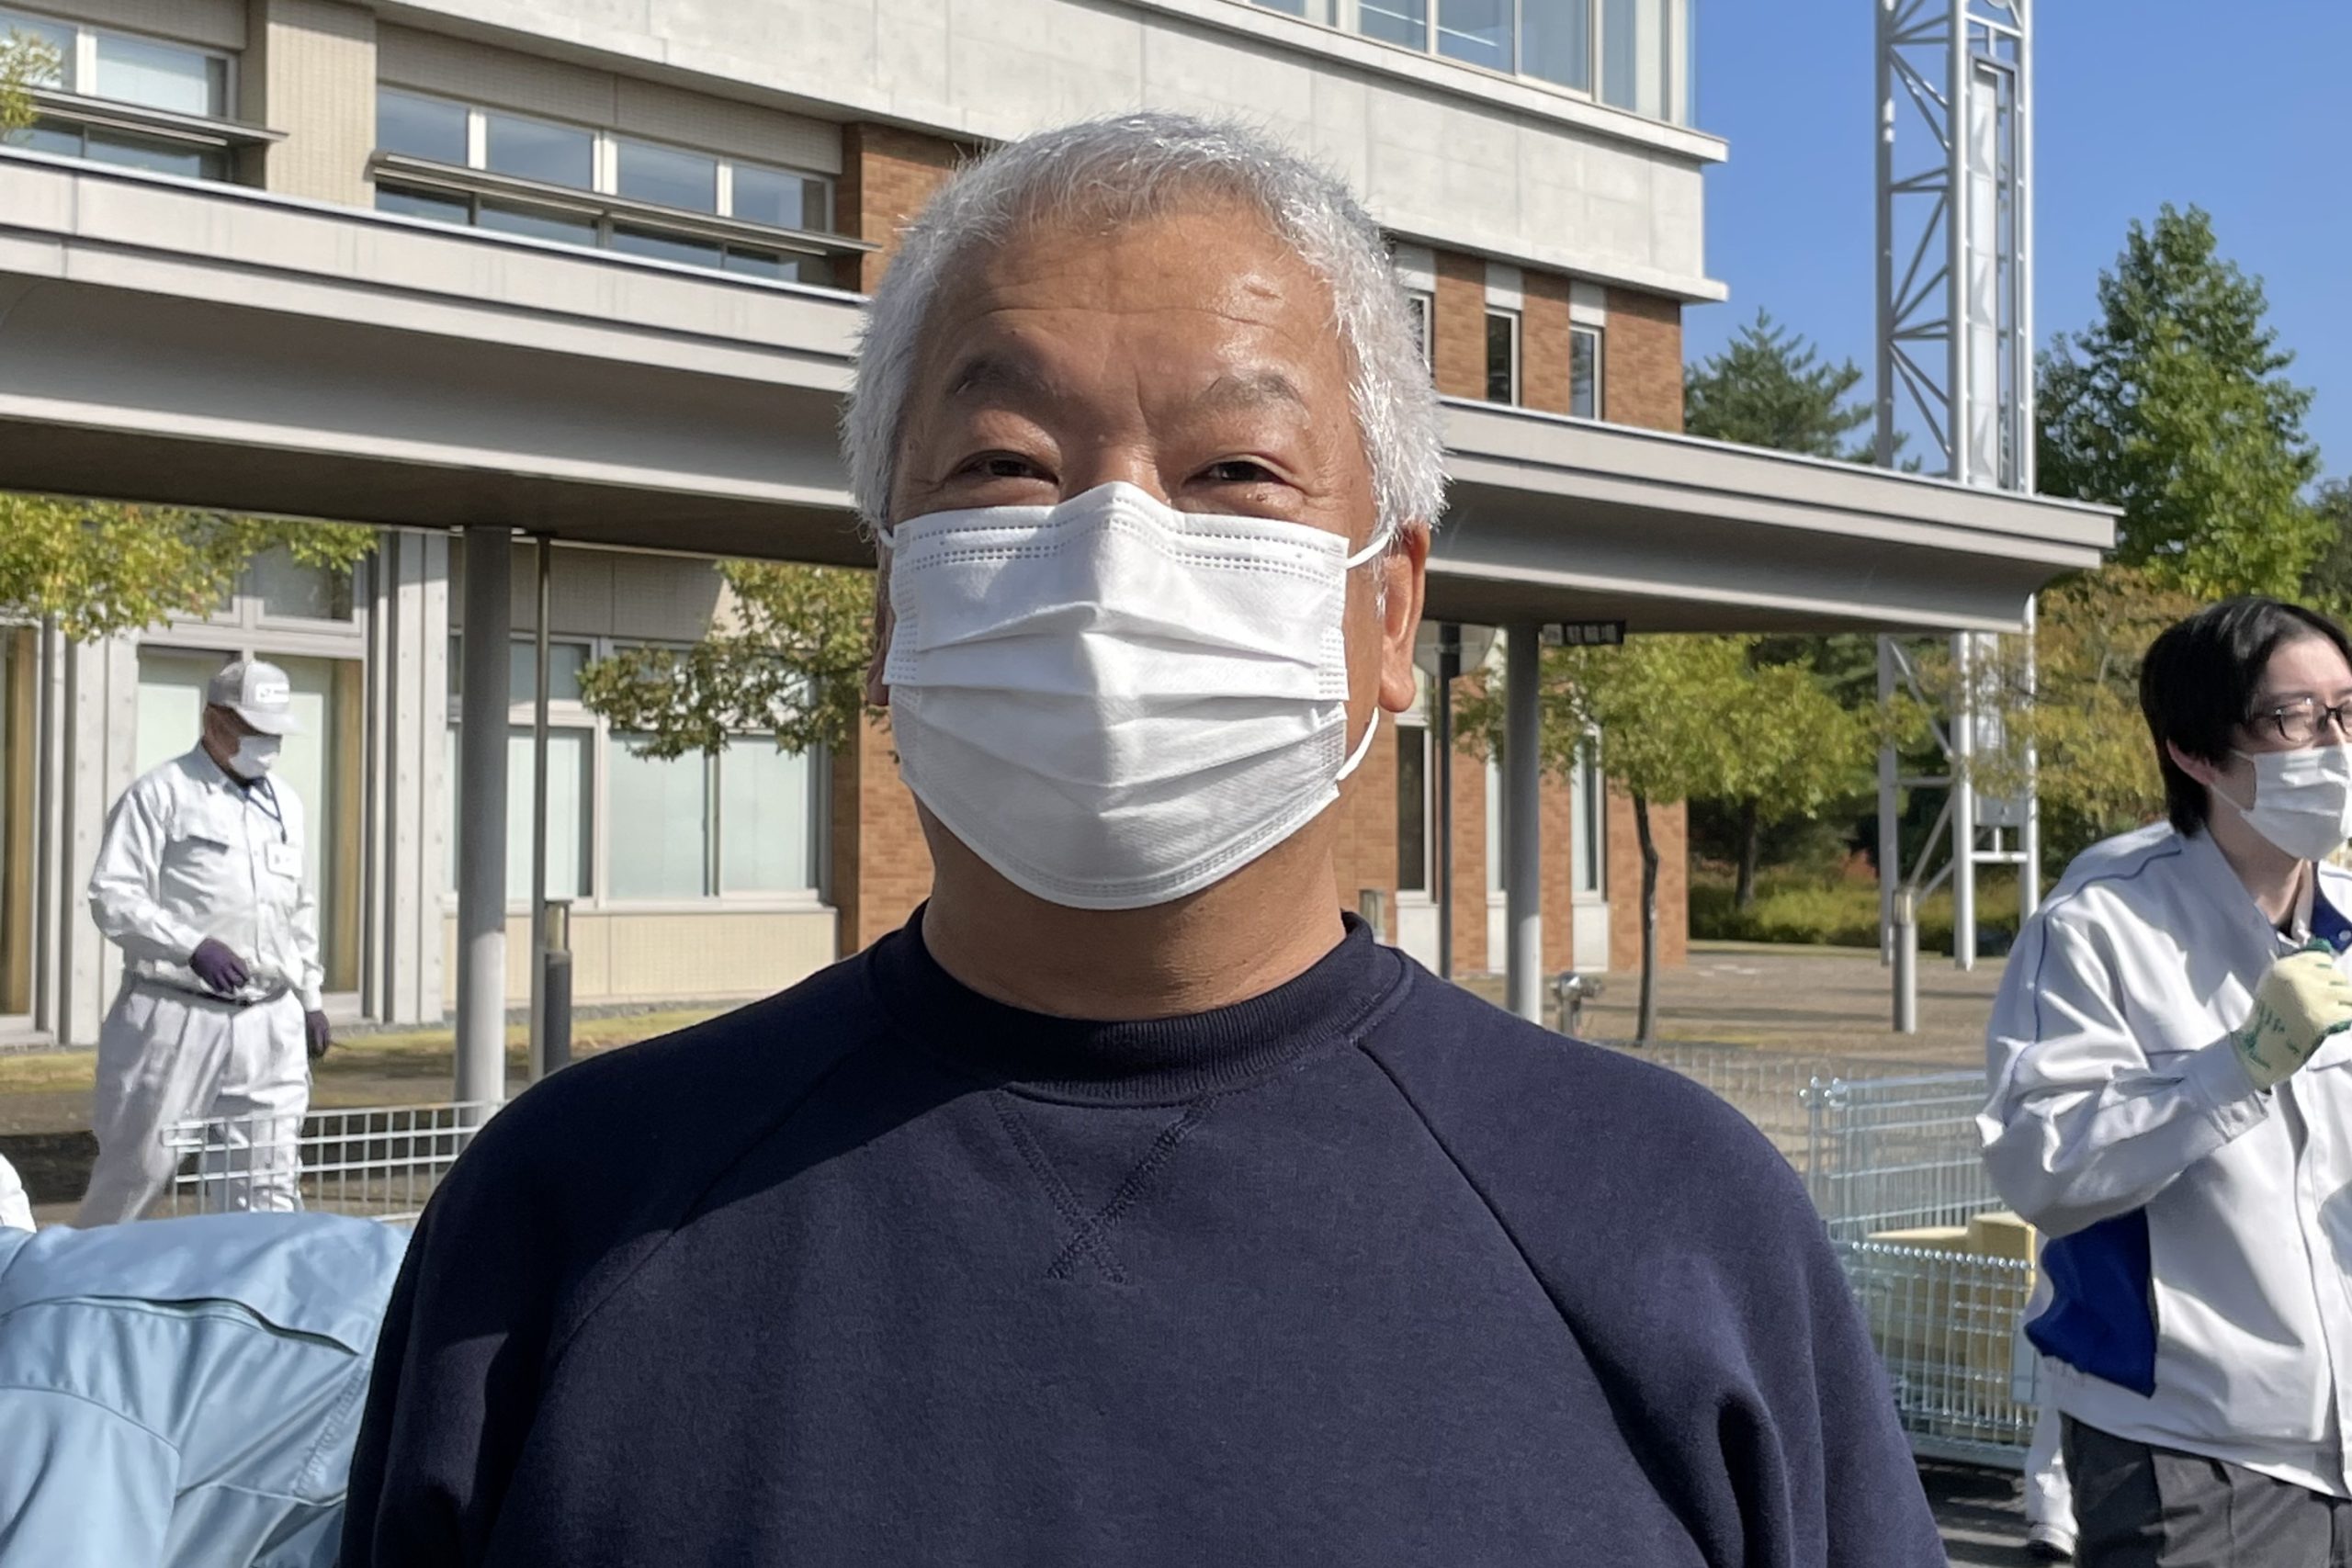 イベント回収に参加した松井さん。自身も、日々の生活の中で節電を心掛けるなど、環境にやさしい取り組みにチャレンジしている。